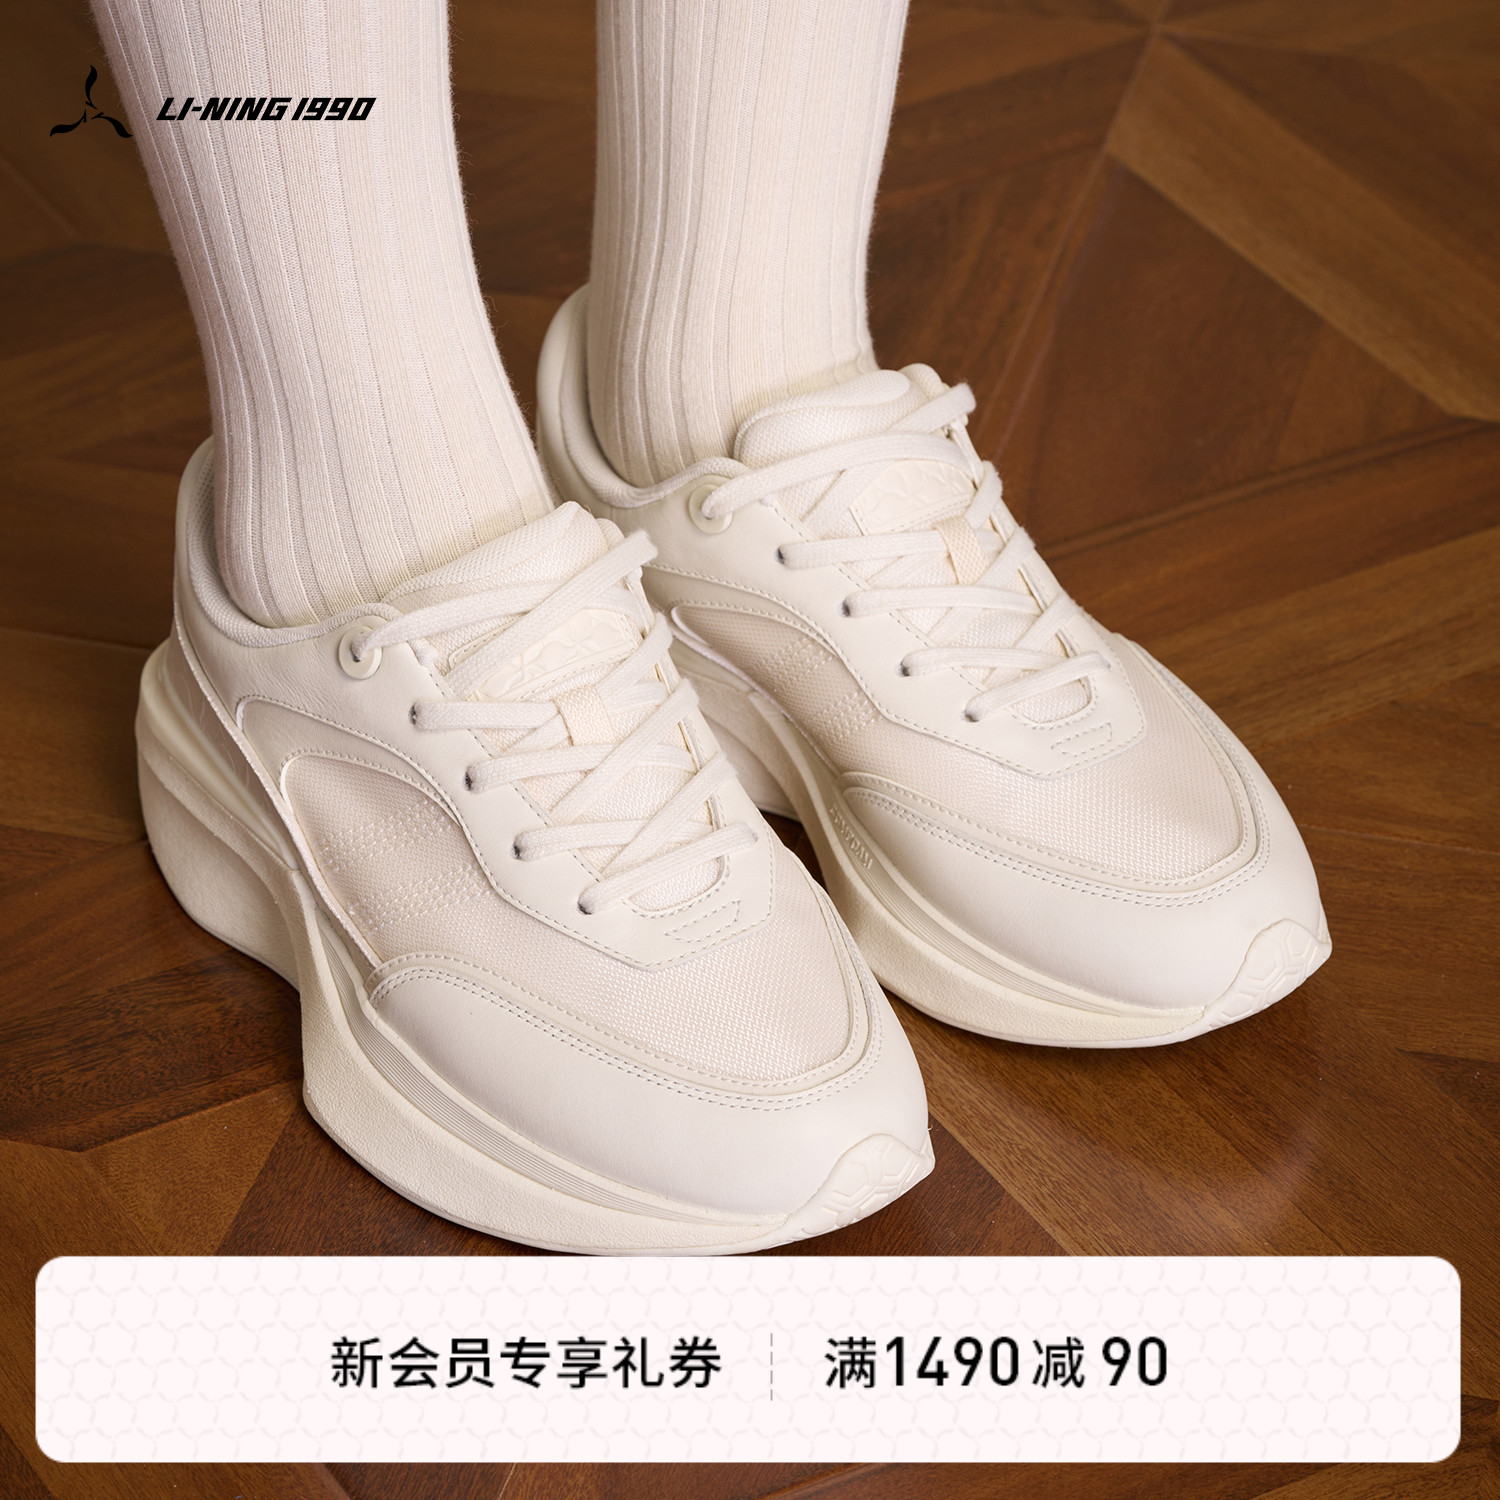 LI-NING1990 女士春夏璇玑复古运动休闲鞋 李宁1990经典系列